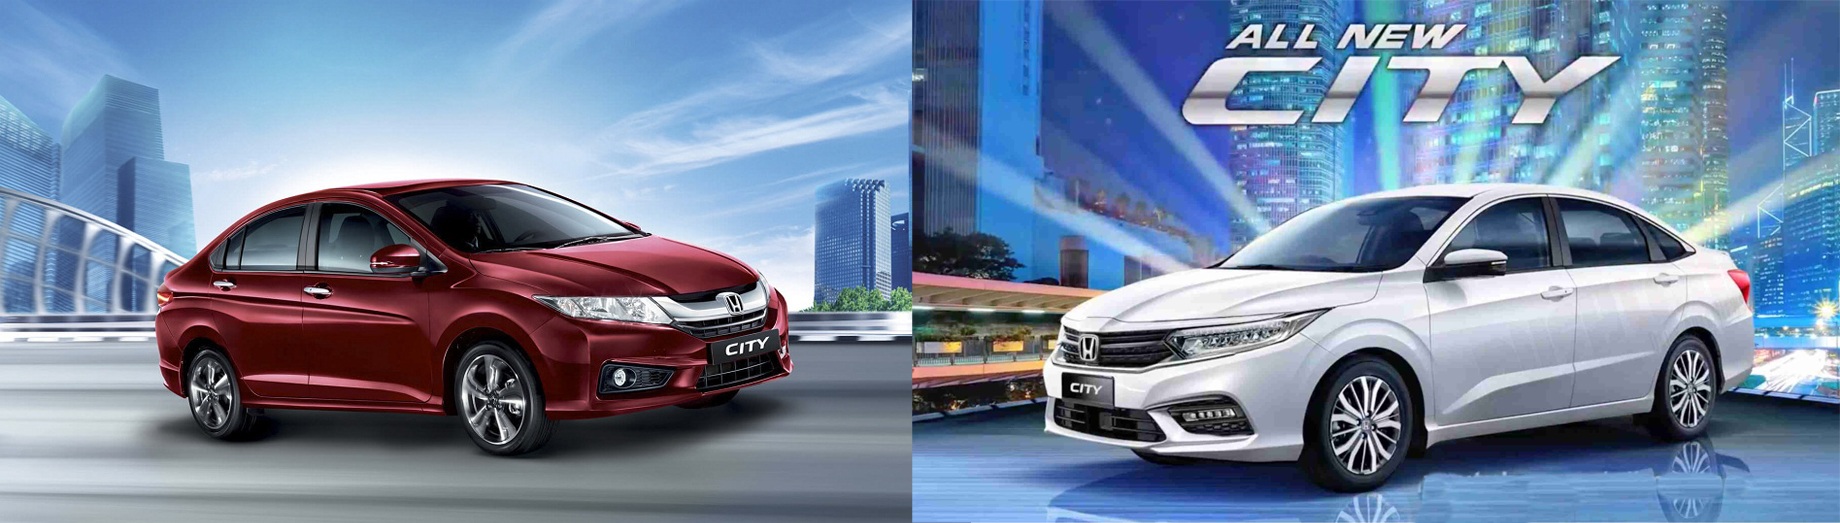 So sánh Honda City mới ra mắt tại Thái Lan và phiên bản hiện tại ở Việt Nam